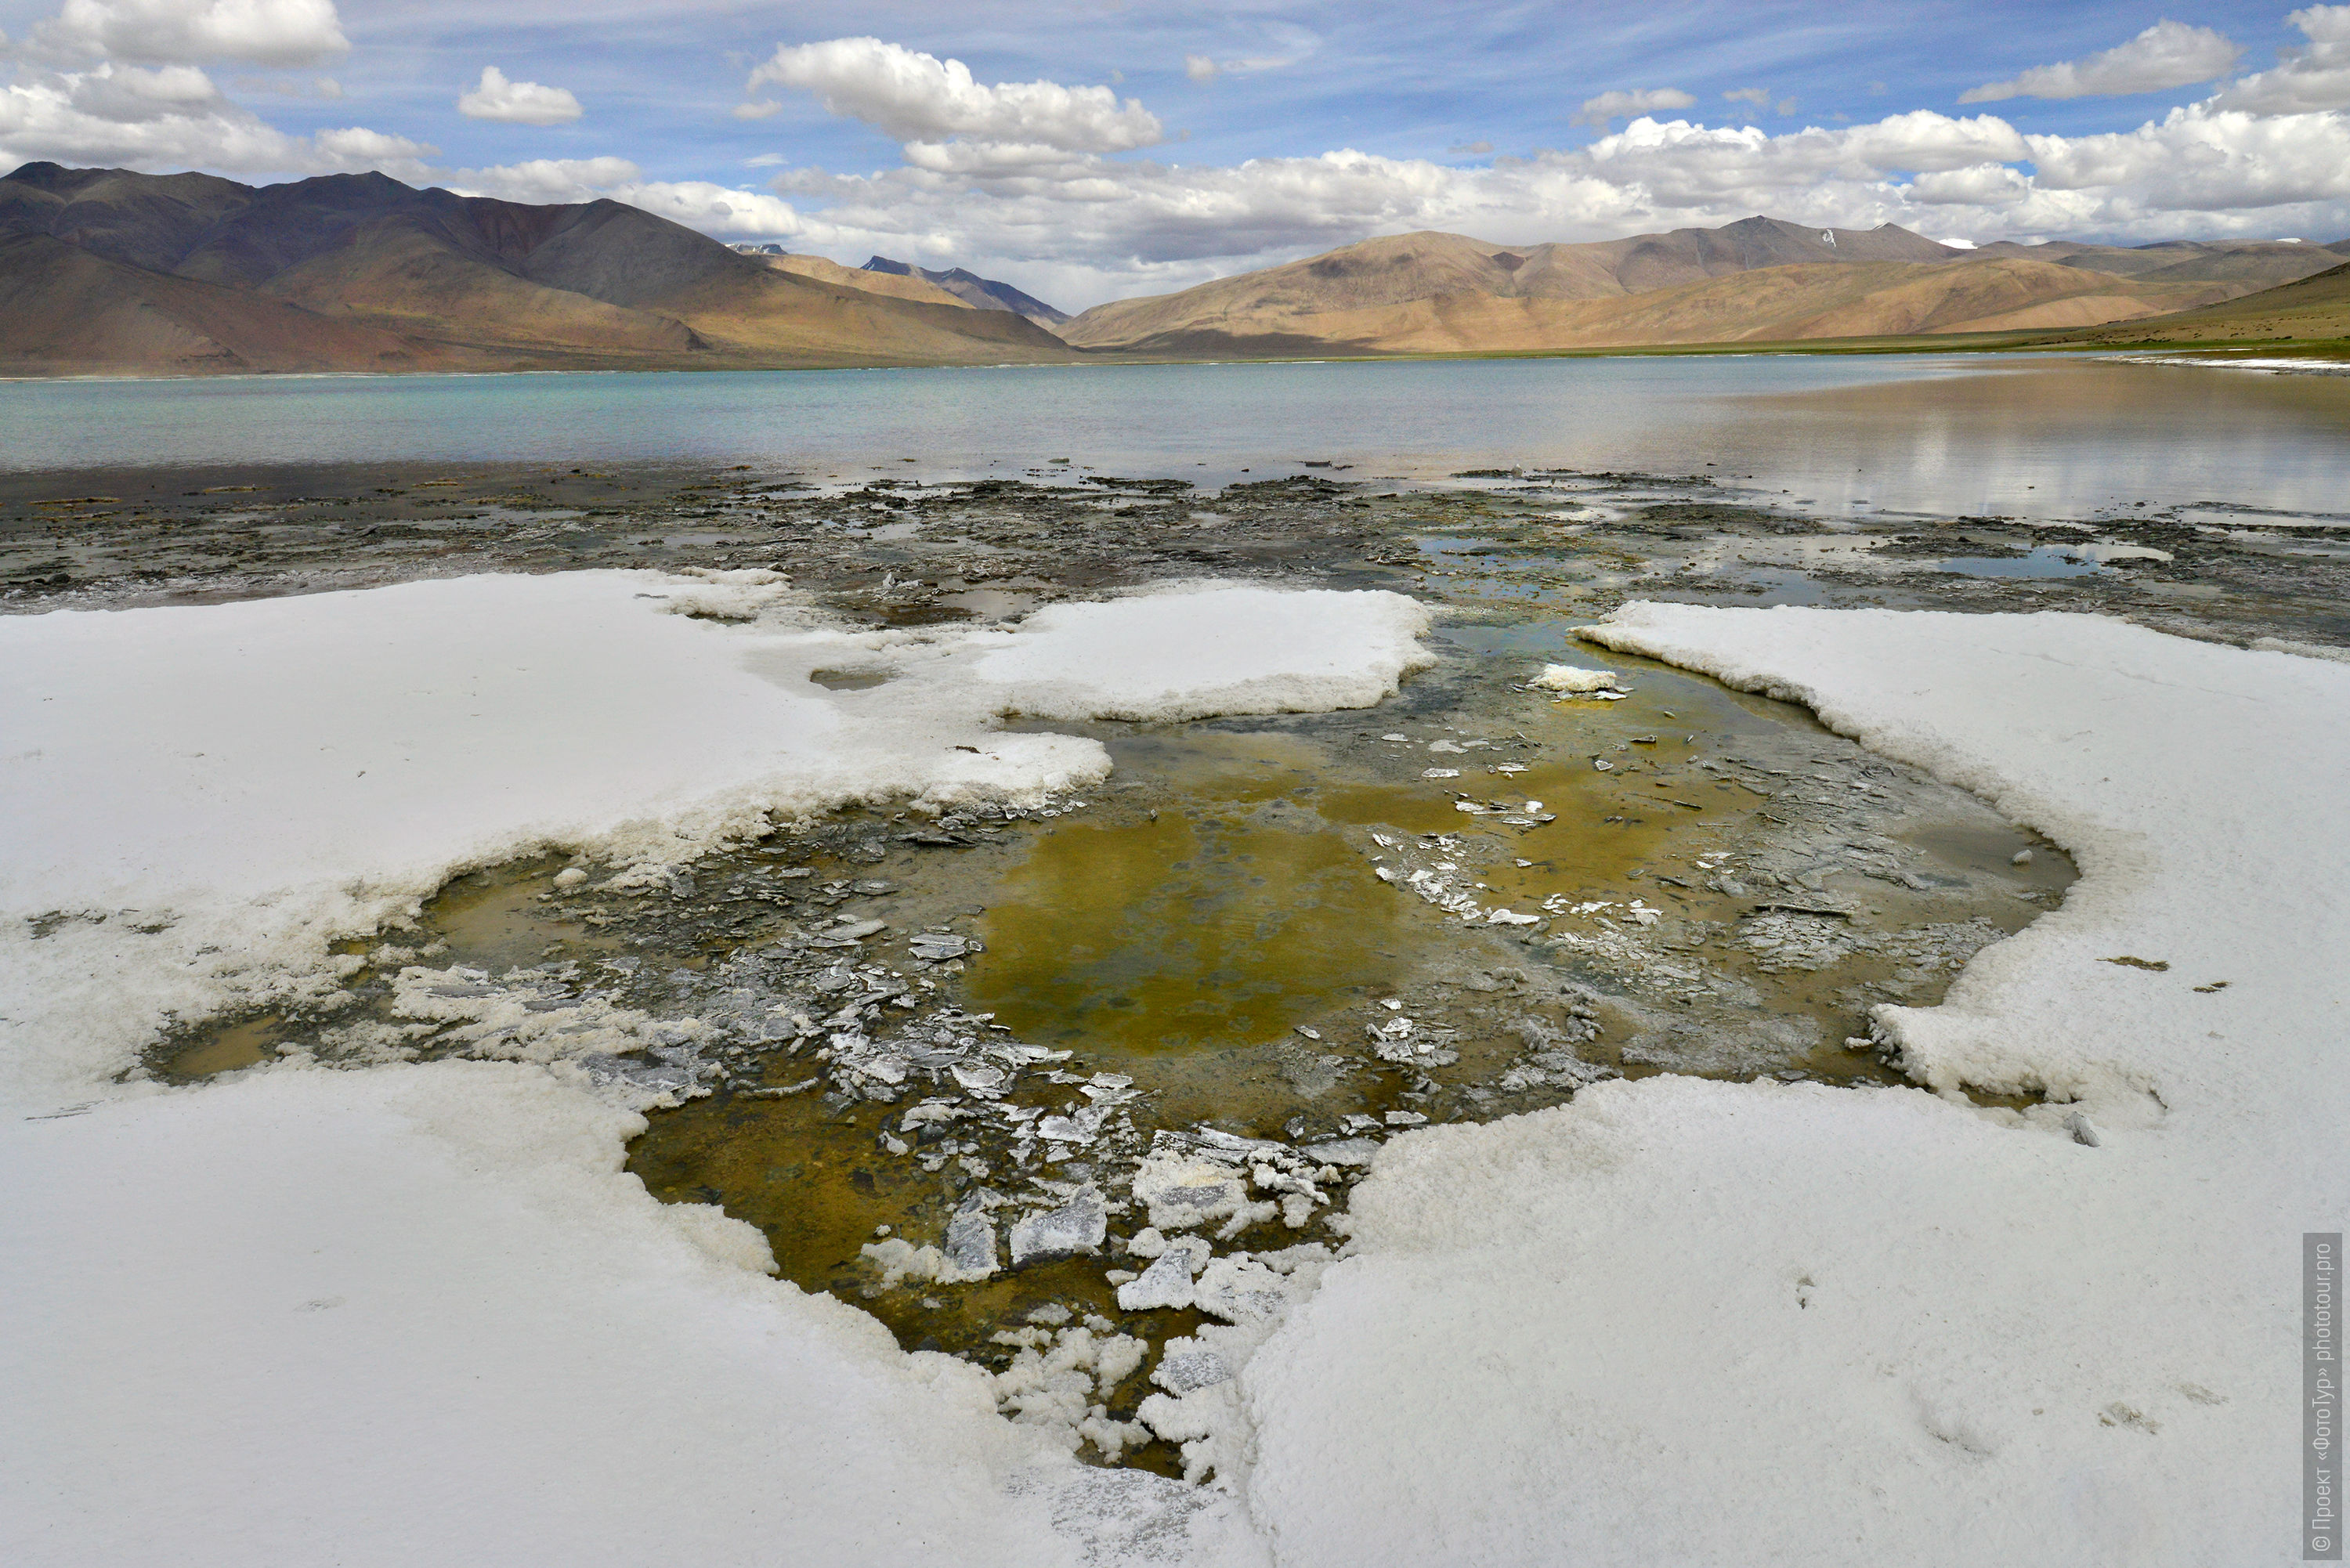 Salt crust on the shore of Lake Tso Kar, Rupshu Valley. Tour Tibet Lakeside Advertising: Alpine lakes, geyser valley, Lamayuru, Colored Mountains, 01 - 10.09. 2023 year.